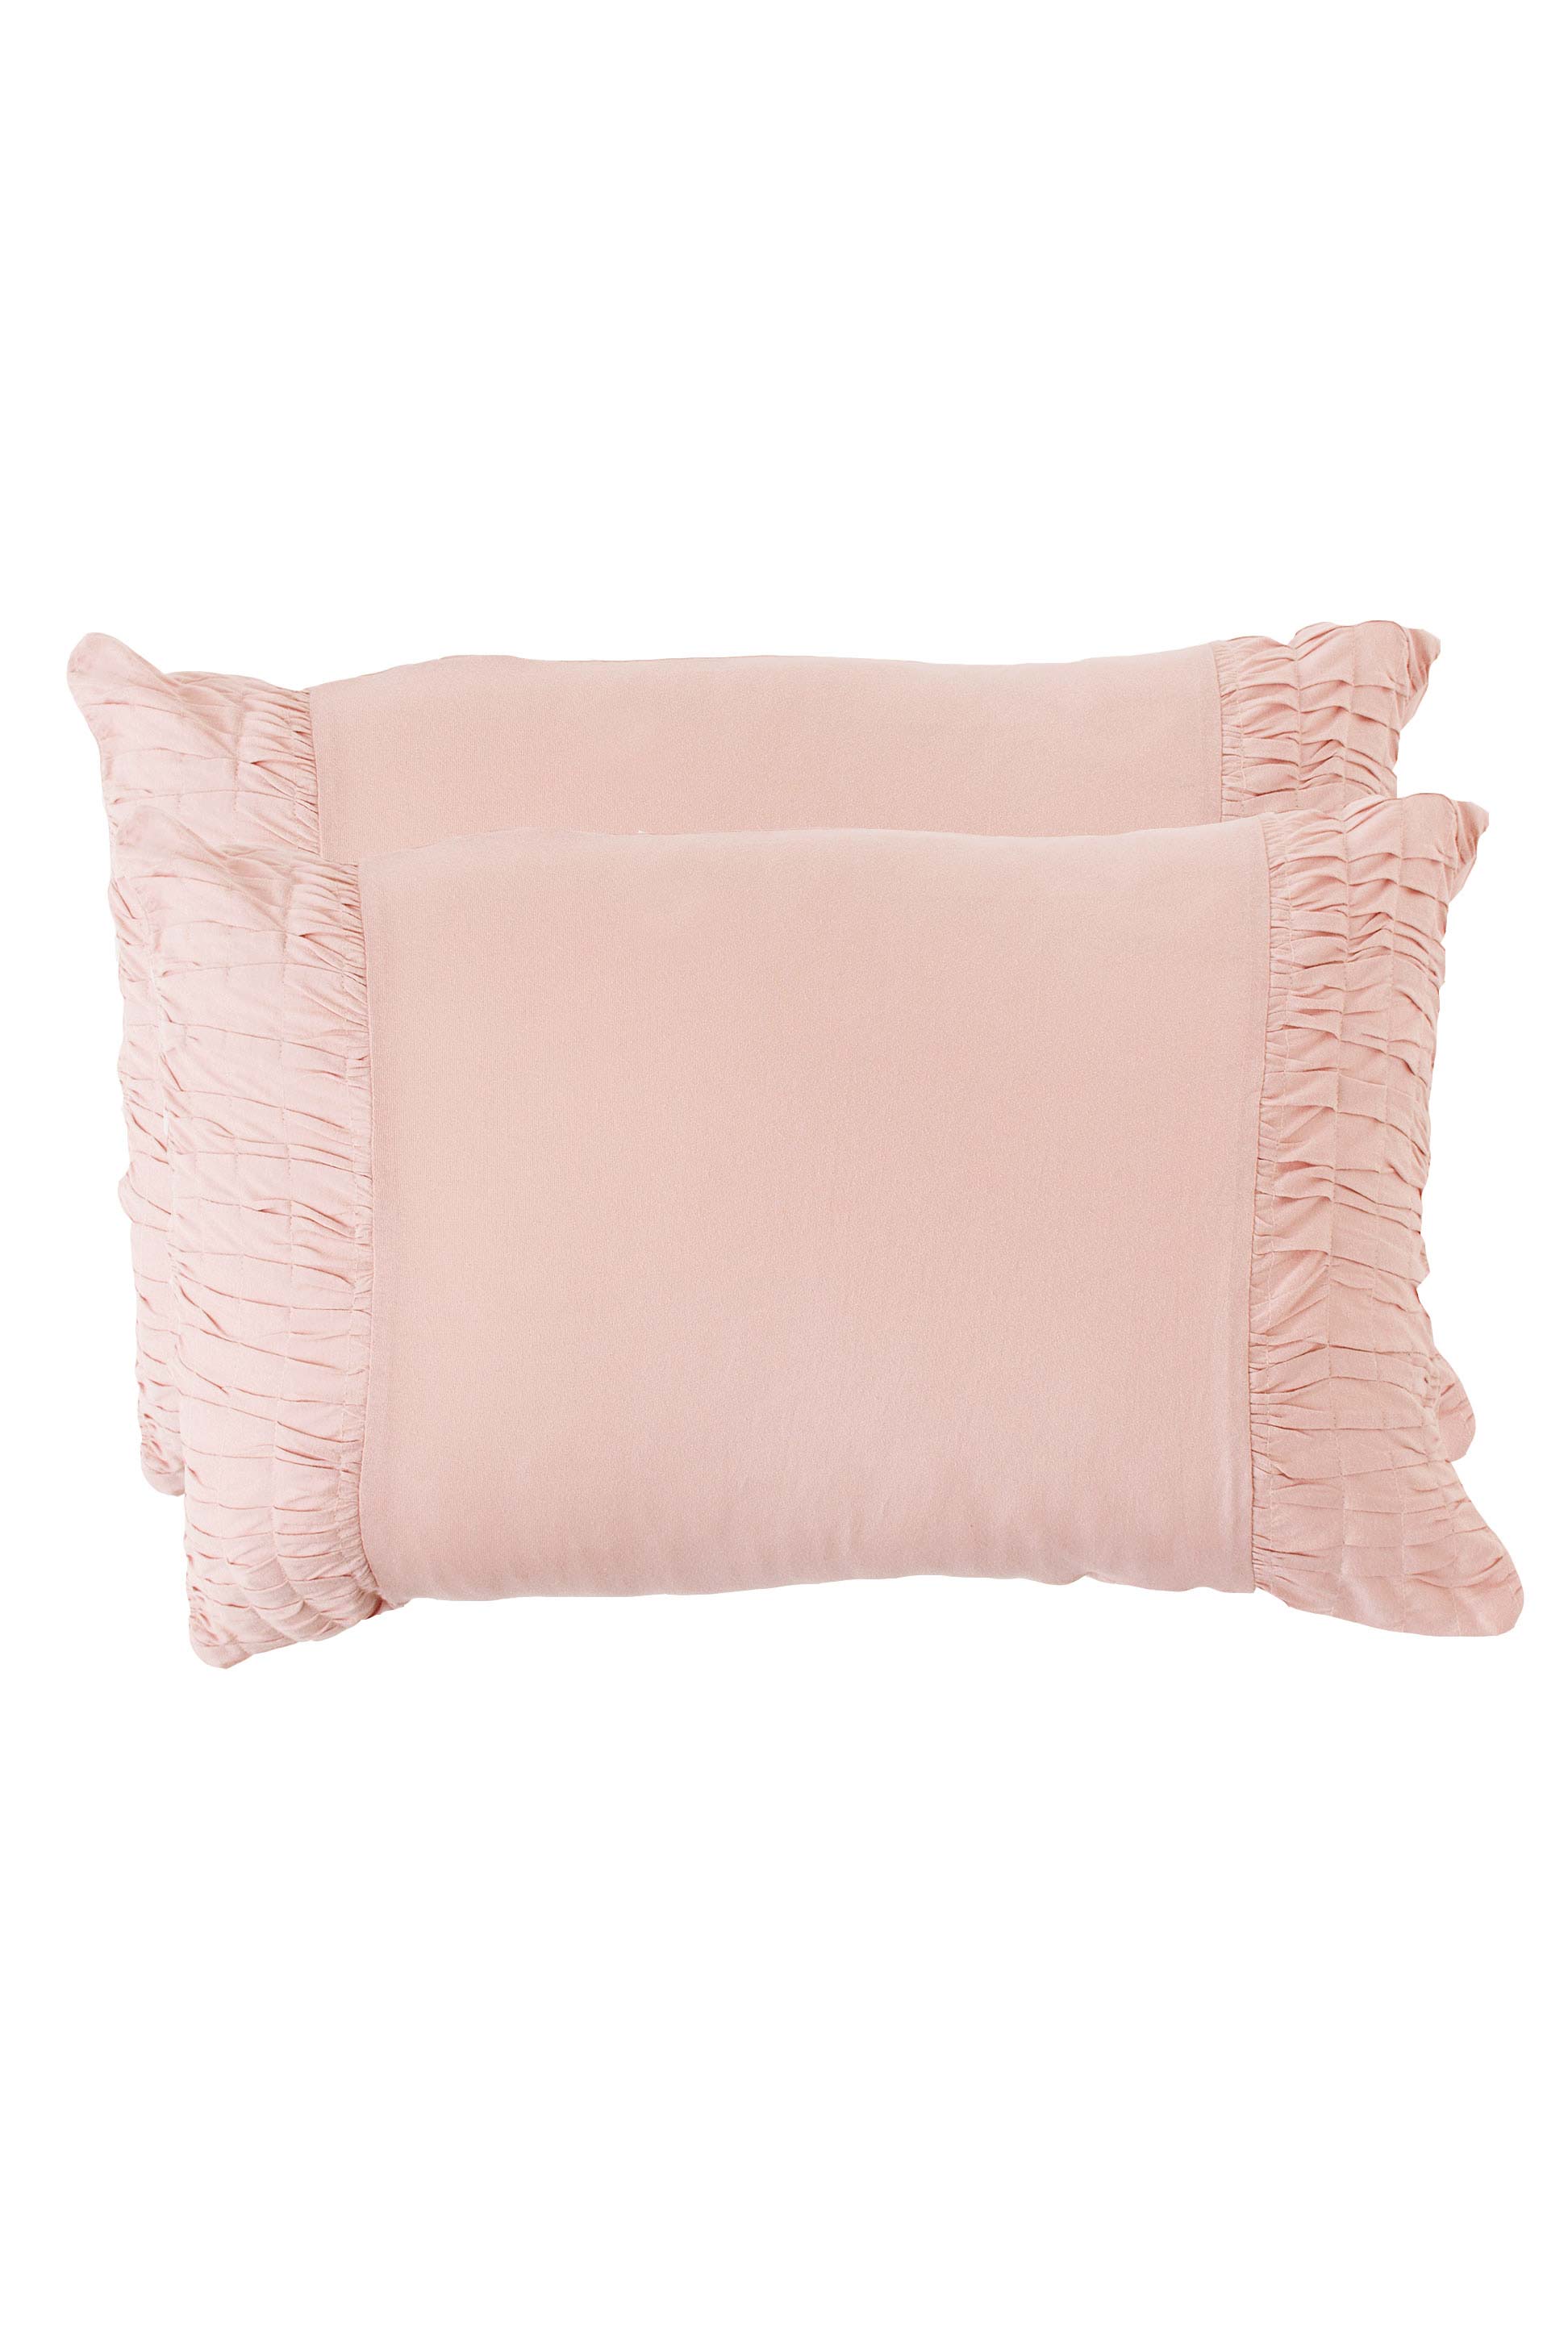 Lazybones Rosette Pillowcase Set - Tuscan Pink